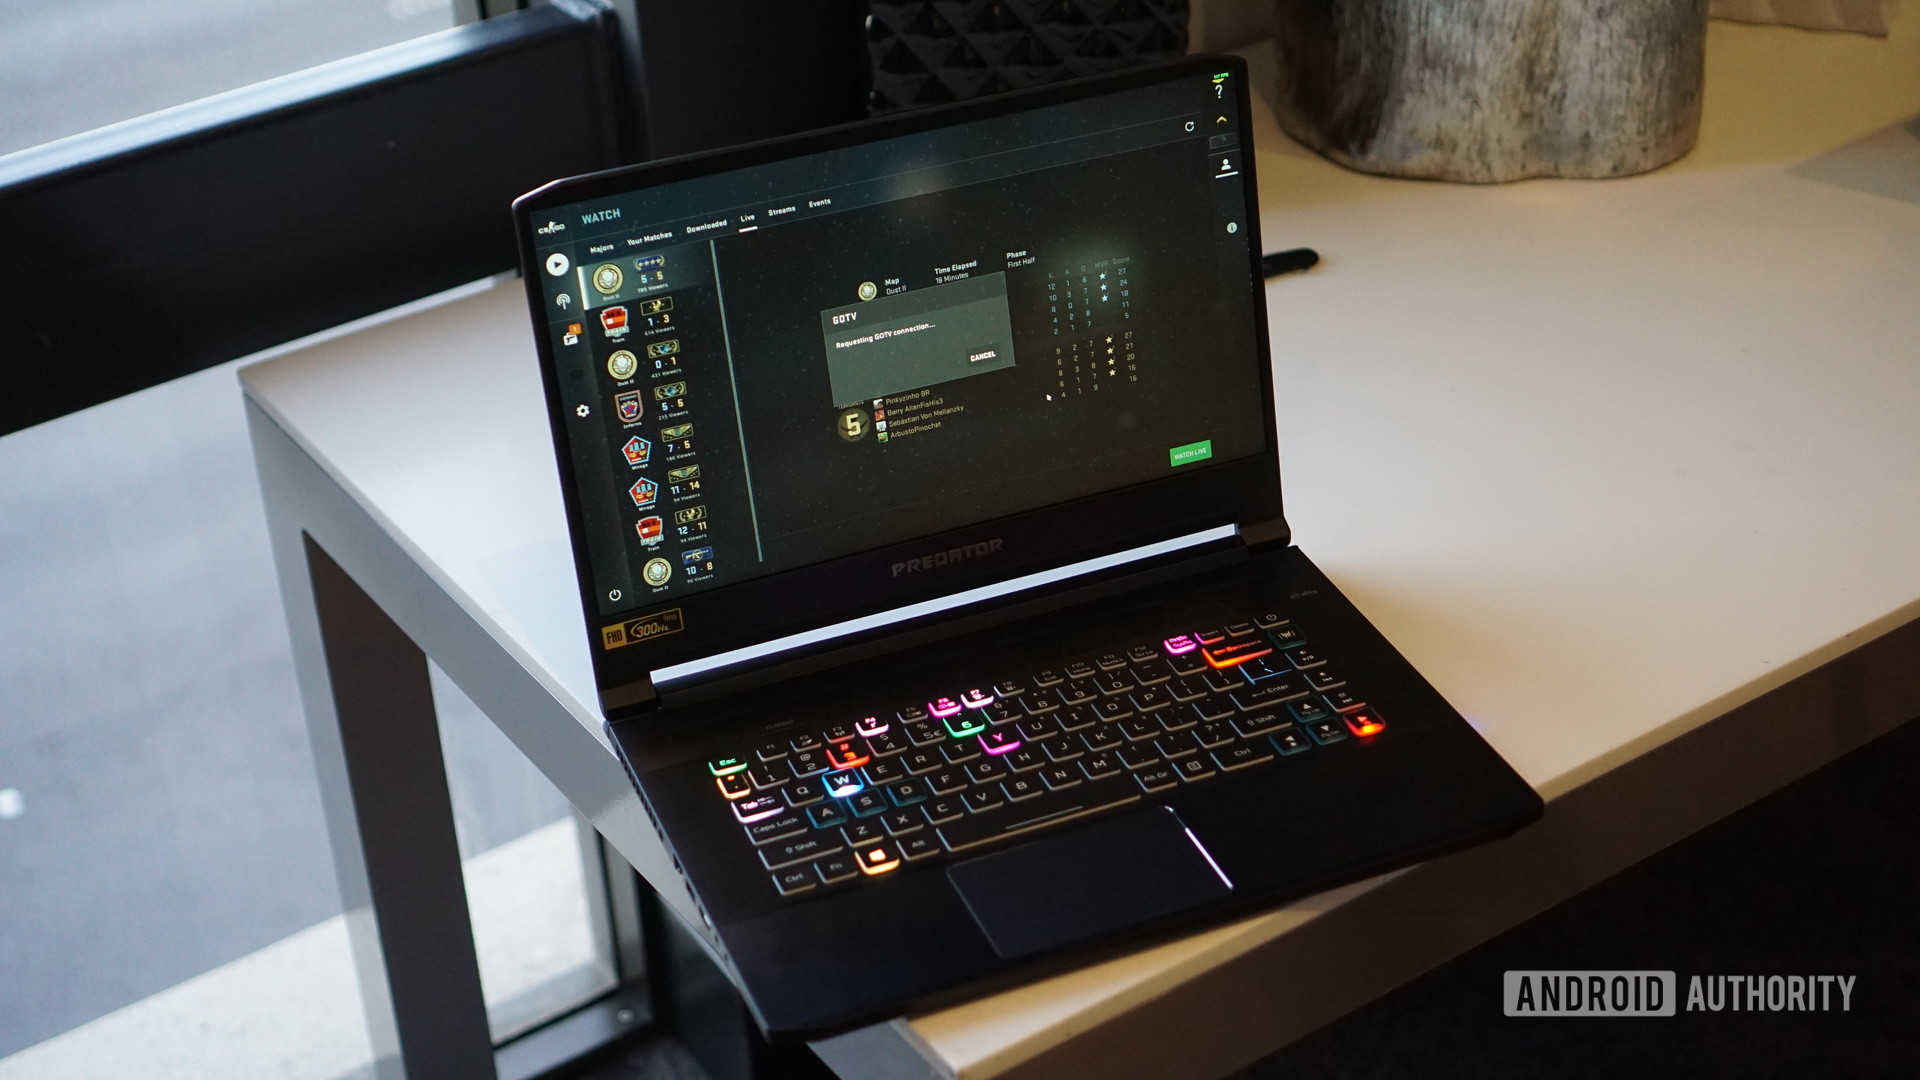 Acer Predator laptop on desk open showing RGB backlit keyboard.